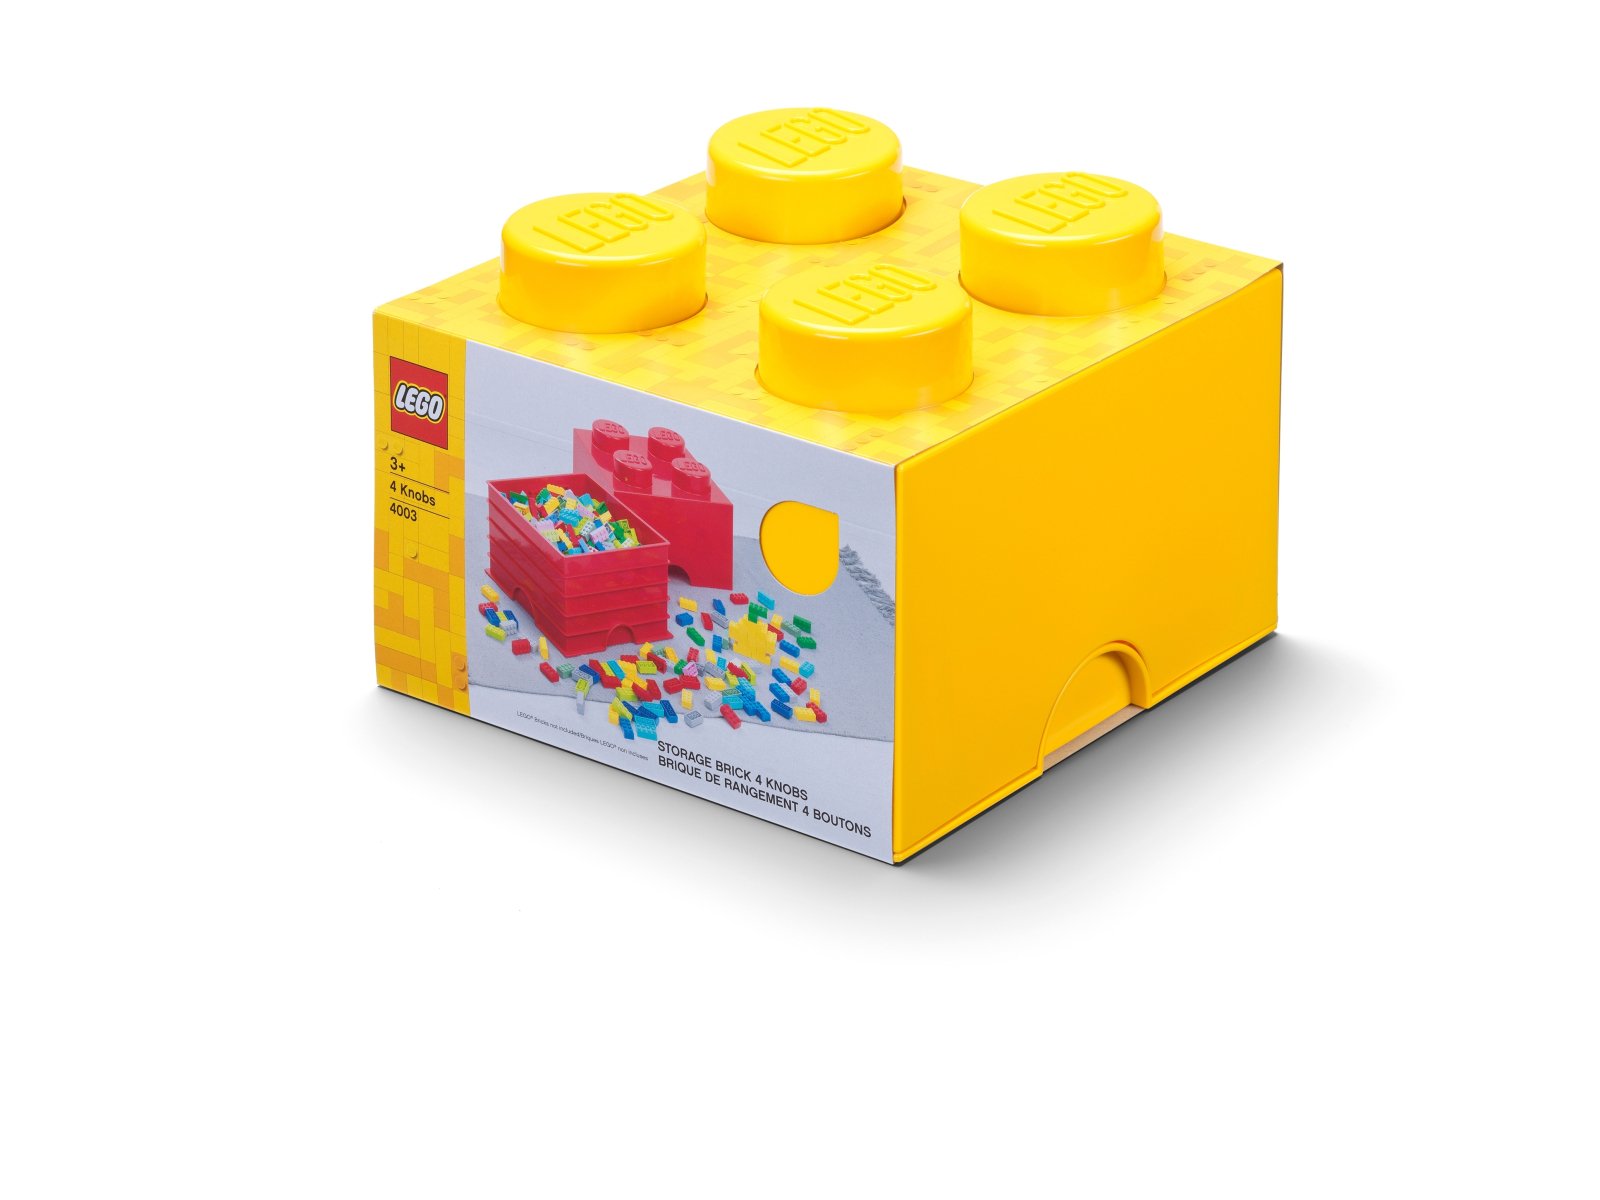 LEGO 5007128 Pudełko w kształcie klocka z czterema wypustkami – żółte